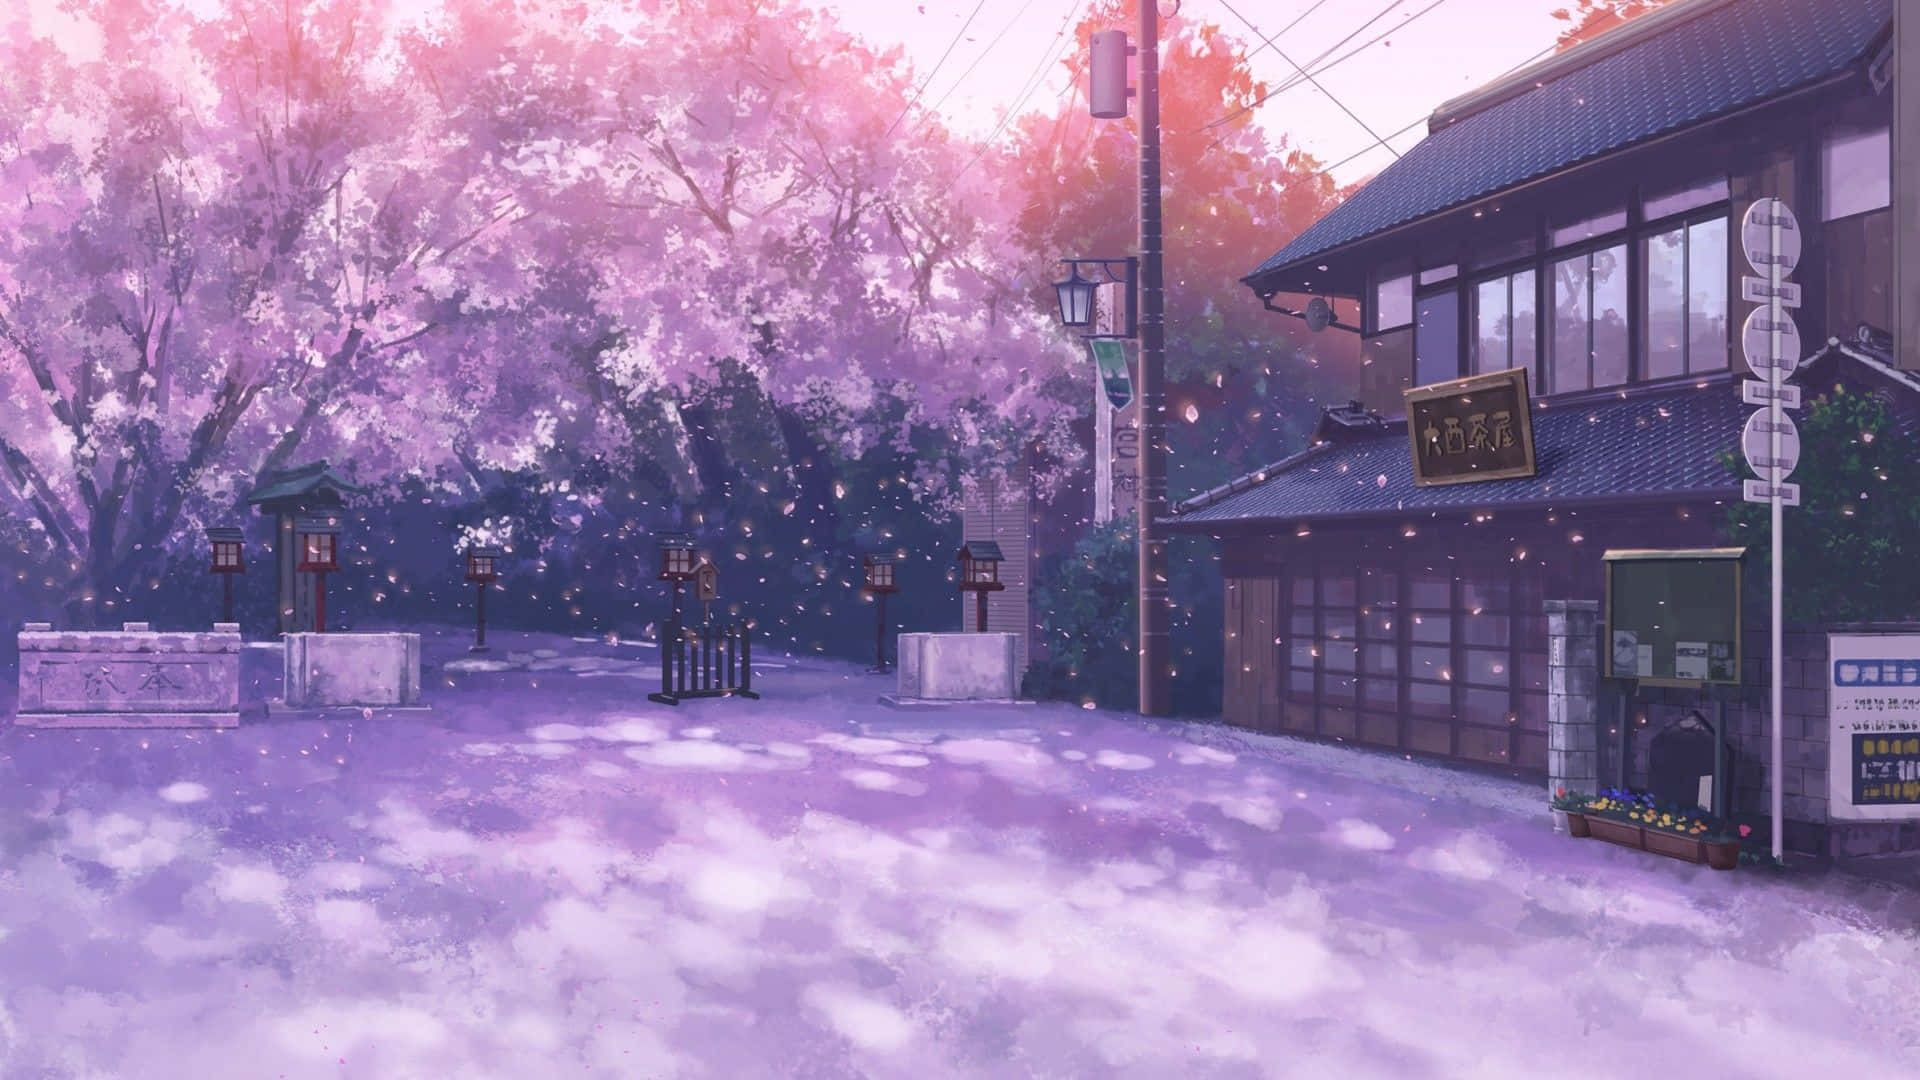 Sakura Anime Wallpaper: Với Sakura Anime Wallpaper, bạn sẽ được đắm mình trong một thế giới manga kết hợp với hoa anh đào tuyệt đẹp. Hình nền này sẽ đem đến một không gian tràn đầy màu sắc và phong phú với những nhân vật anime đầy cá tính.